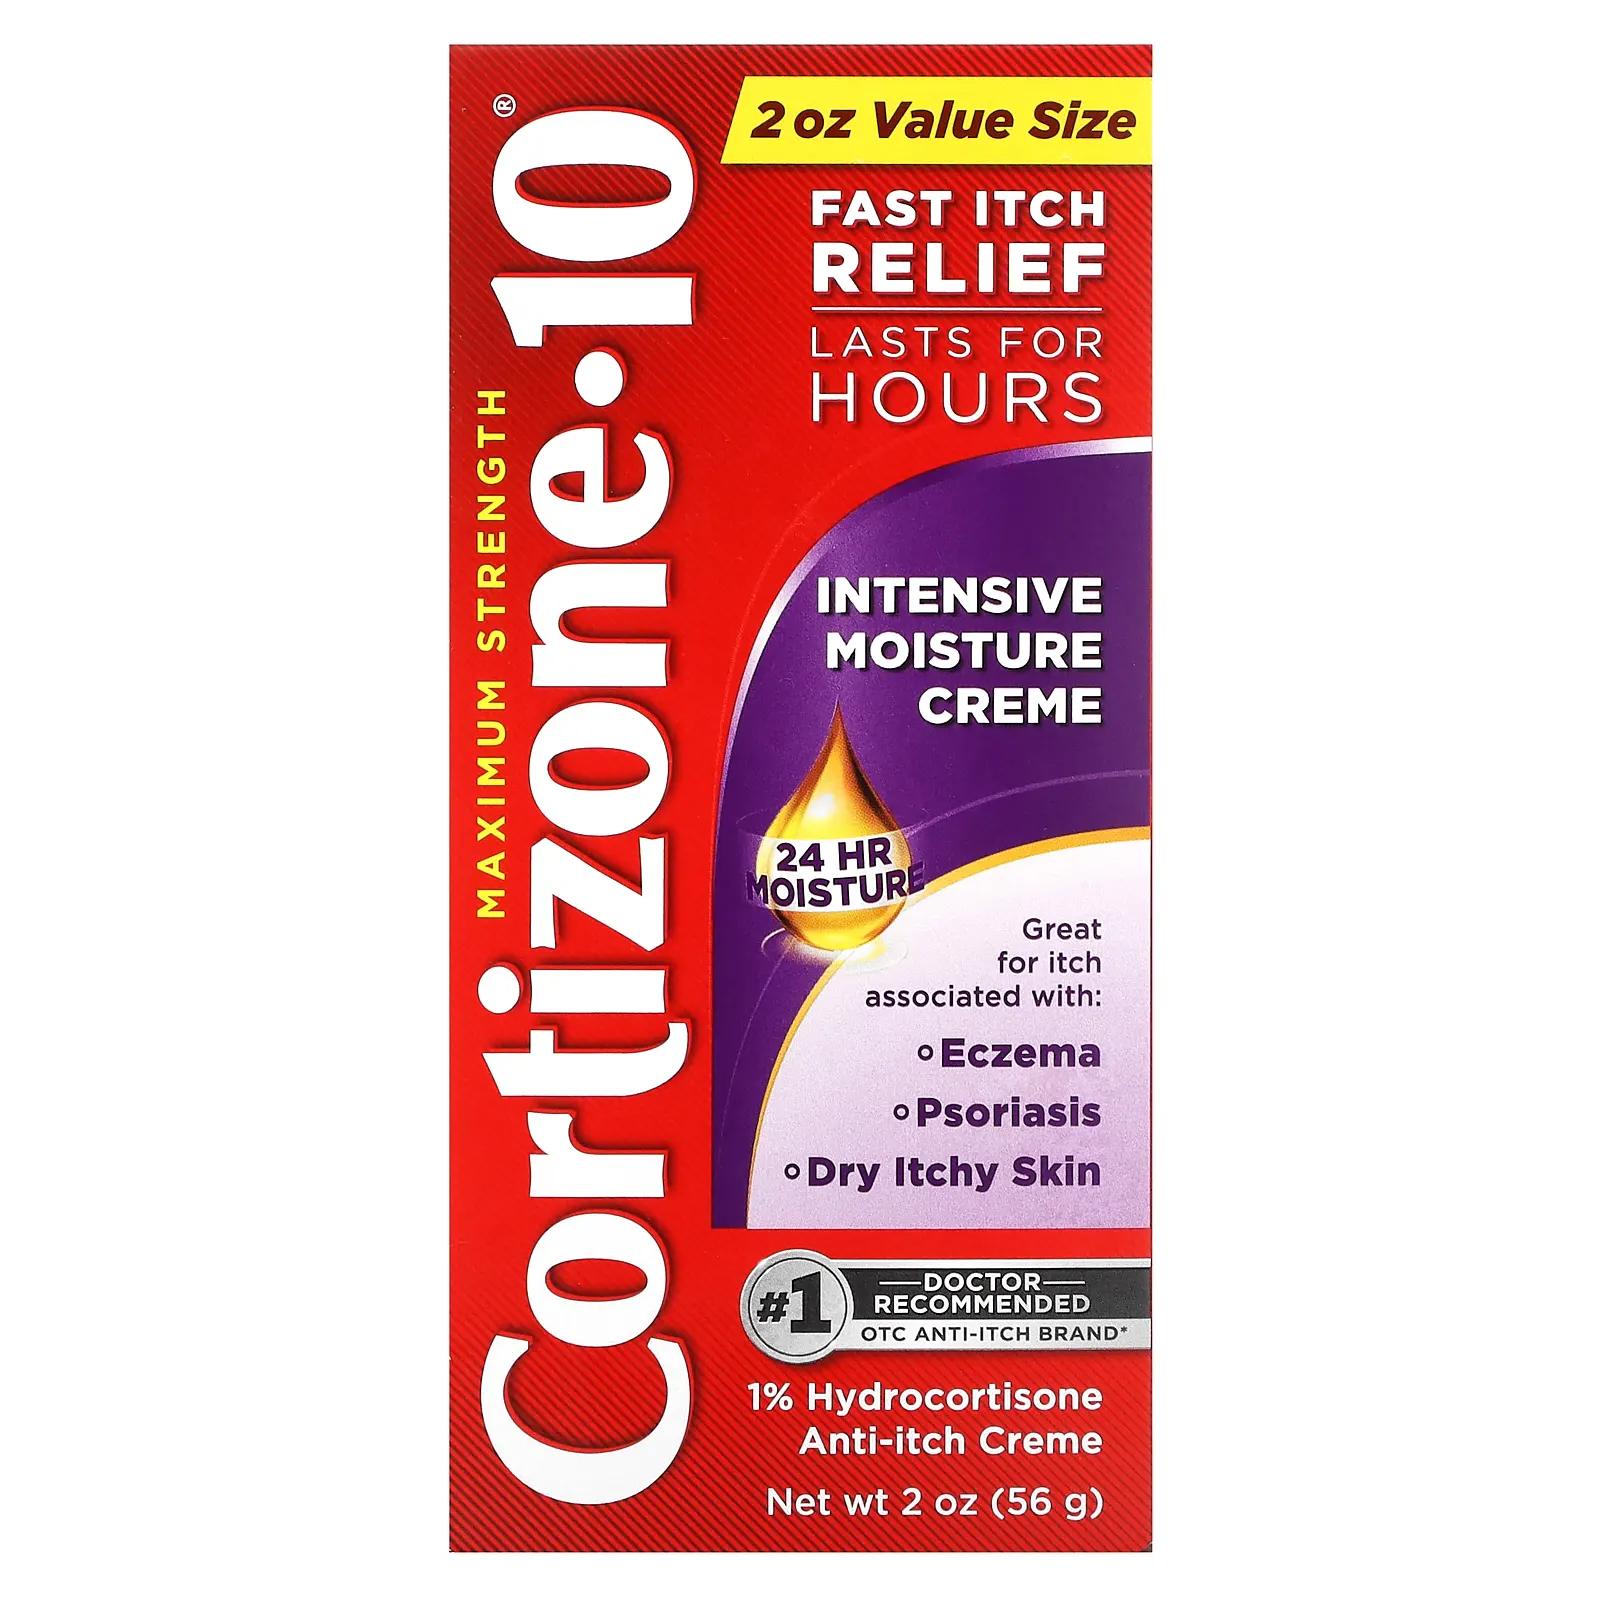 Cortizone 10 Maximum Strength интенсивный увлажняющий крем 56 г (2 унции) cortizone 10 maximum strength успокаивающий крем с алоэ 56 г 2 унции